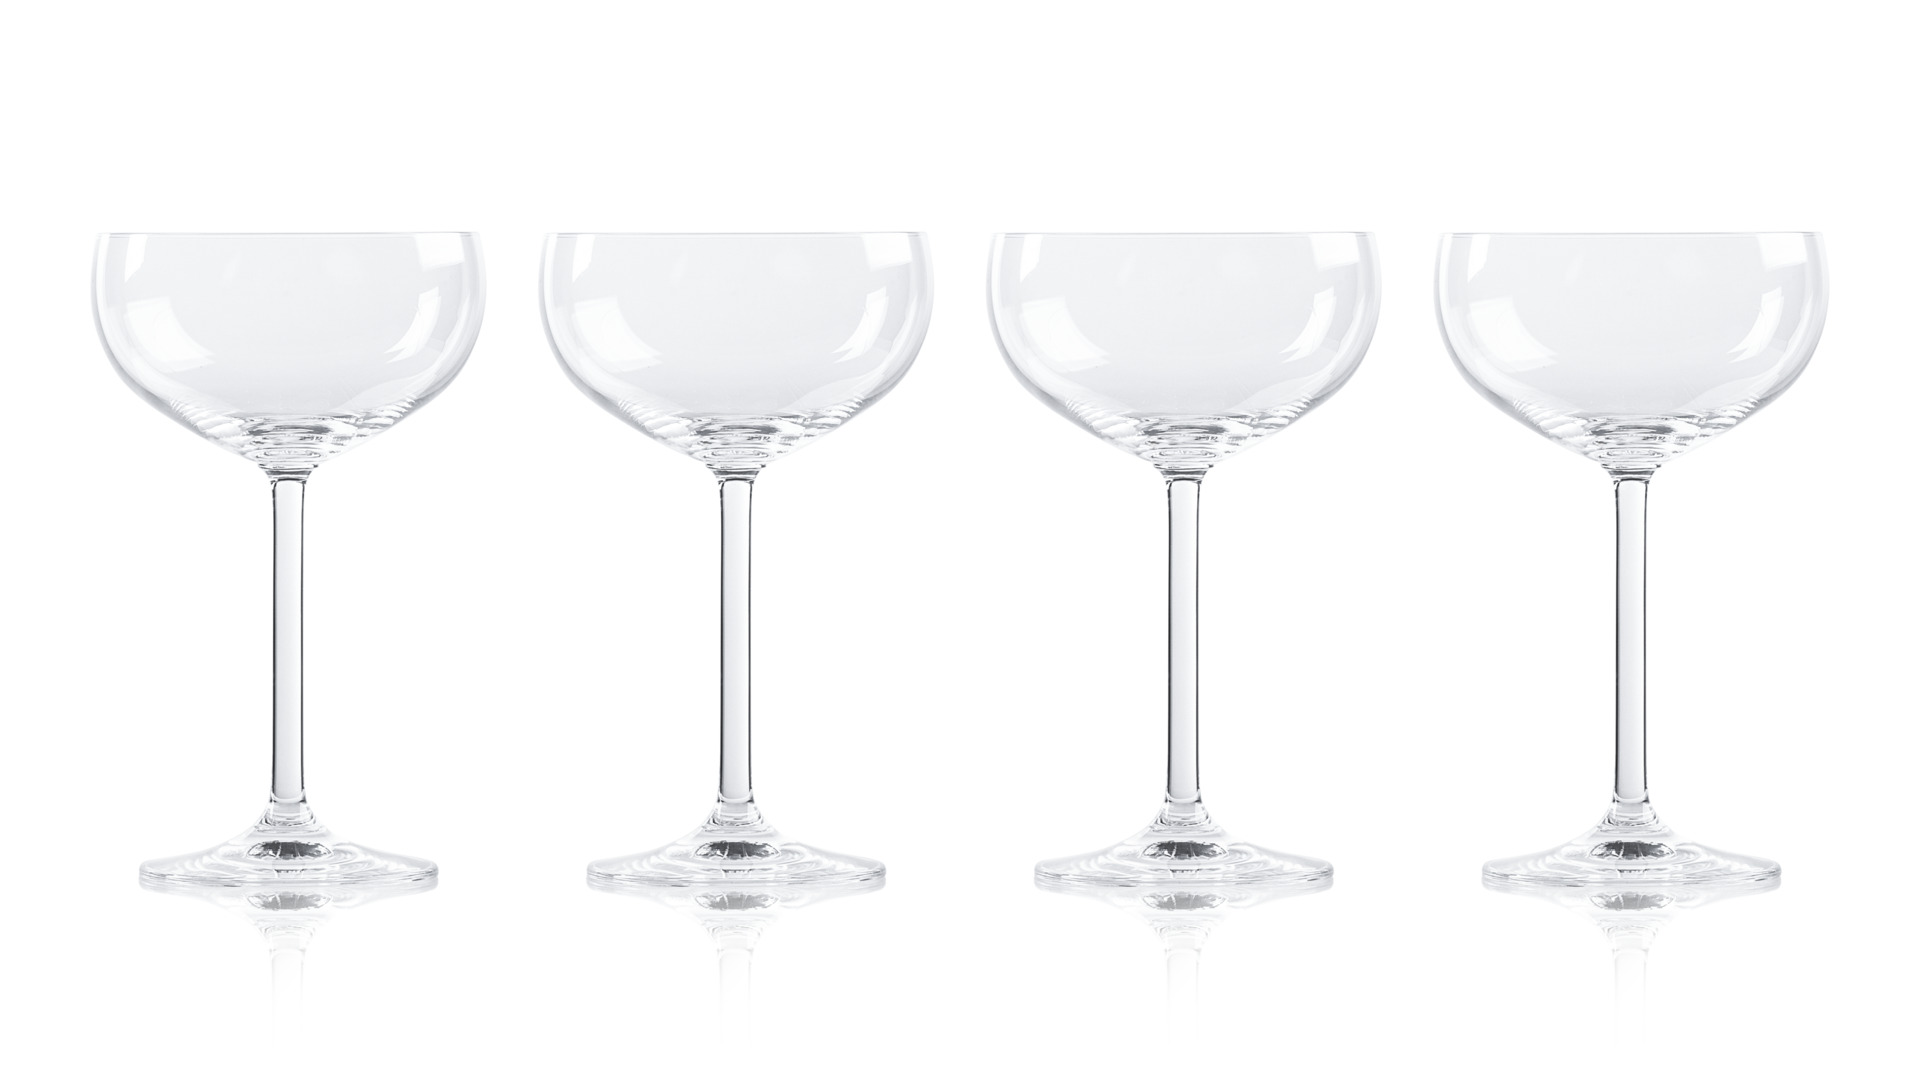 Набор бокалов для шампанского Lenox Тосканская класссика 270 мл, 4 шт